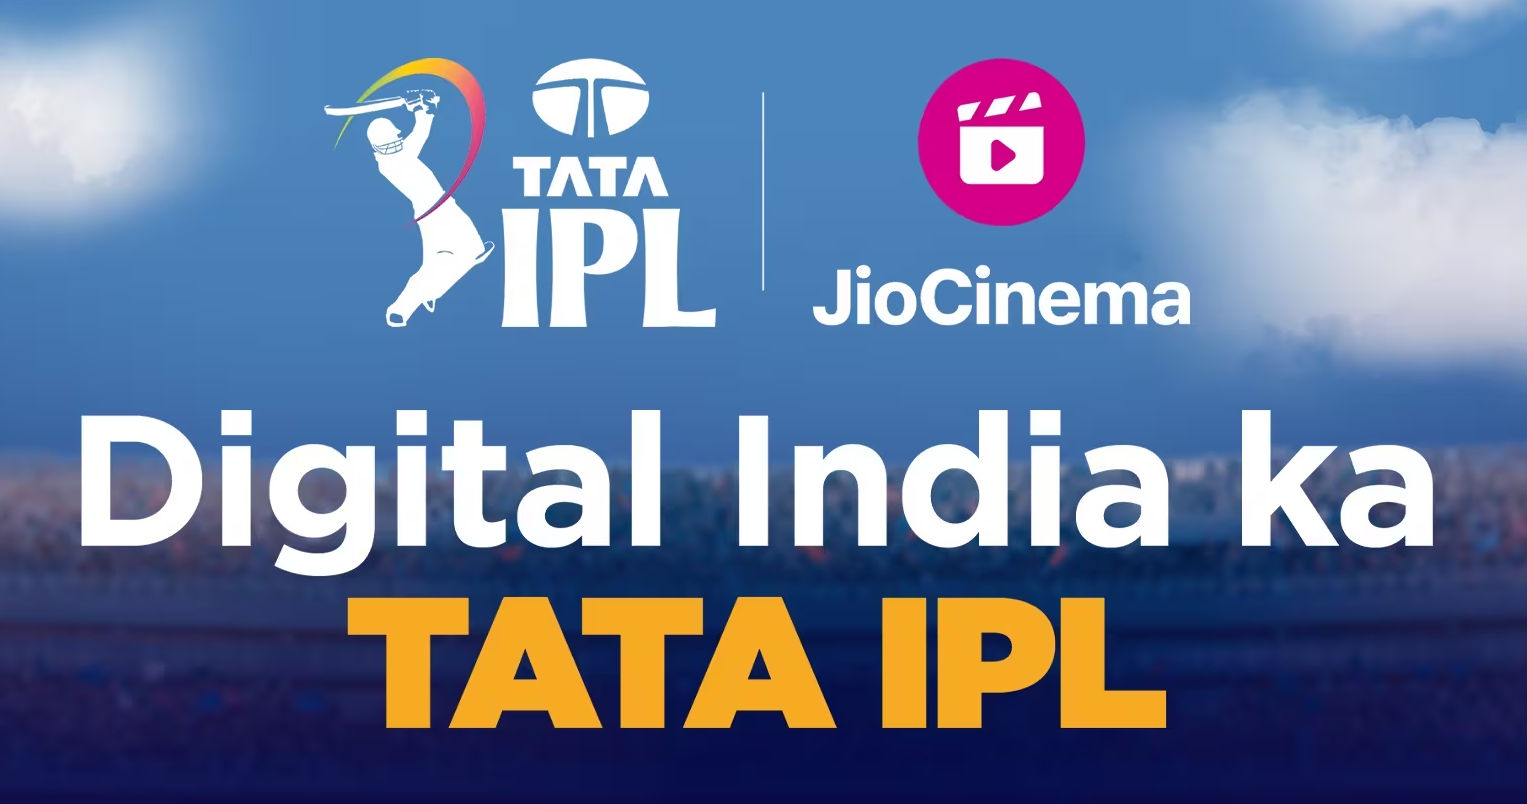 TATA IPL 2023 JioCinema clocks over 1300 crore video views in 5 weeks